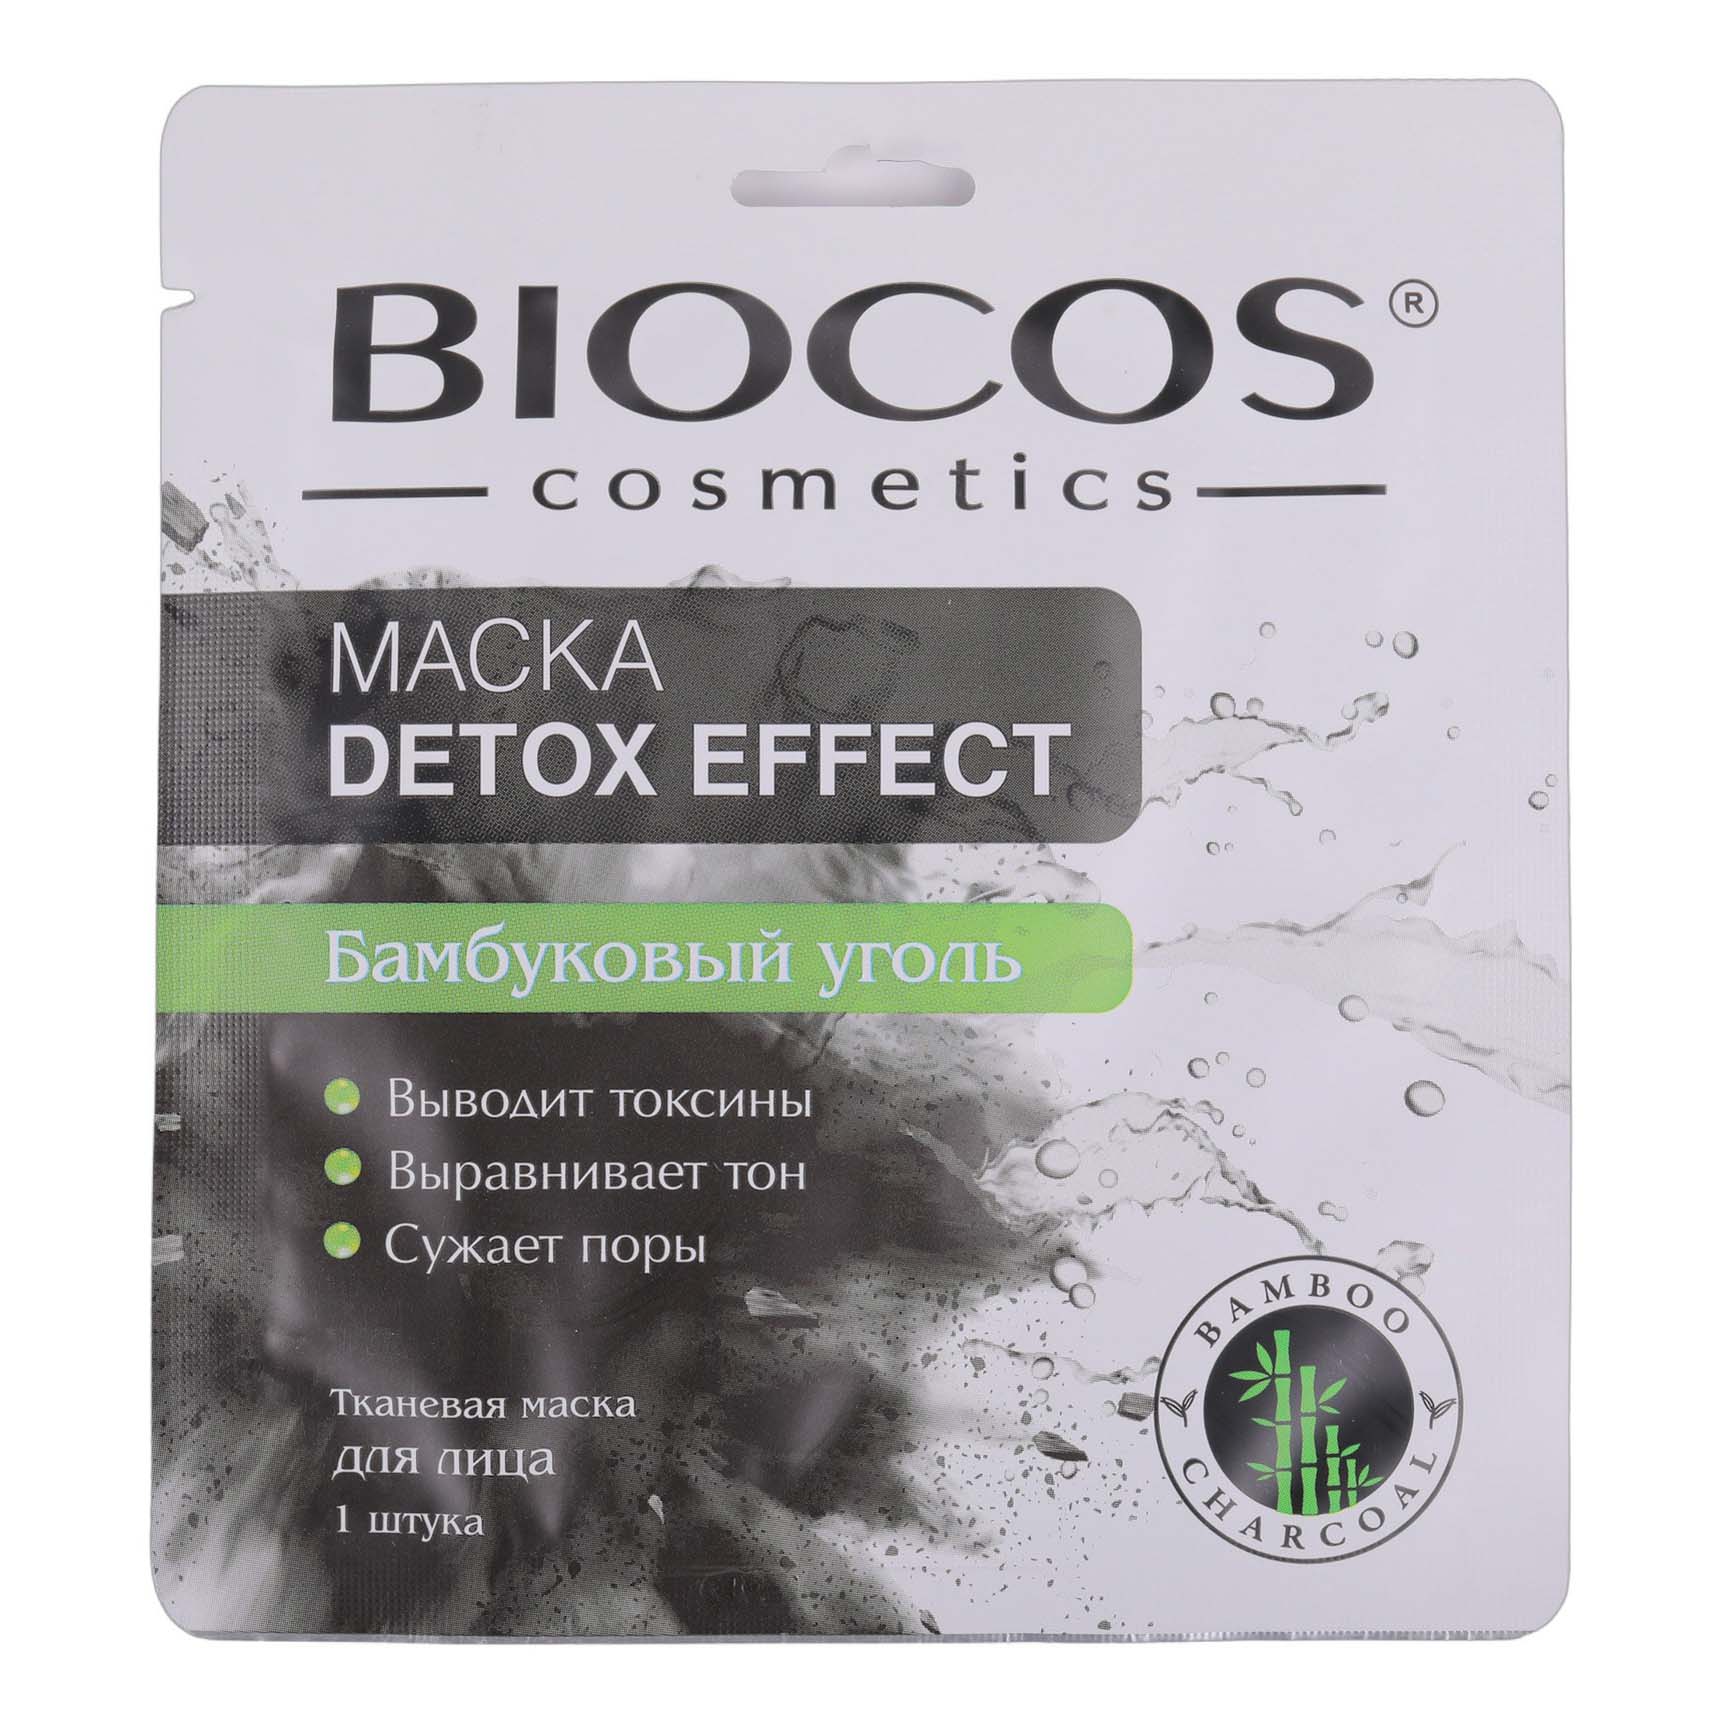 Маска тканевая для лица Biocos Detox Effect с бамбуковым углем 1 шт